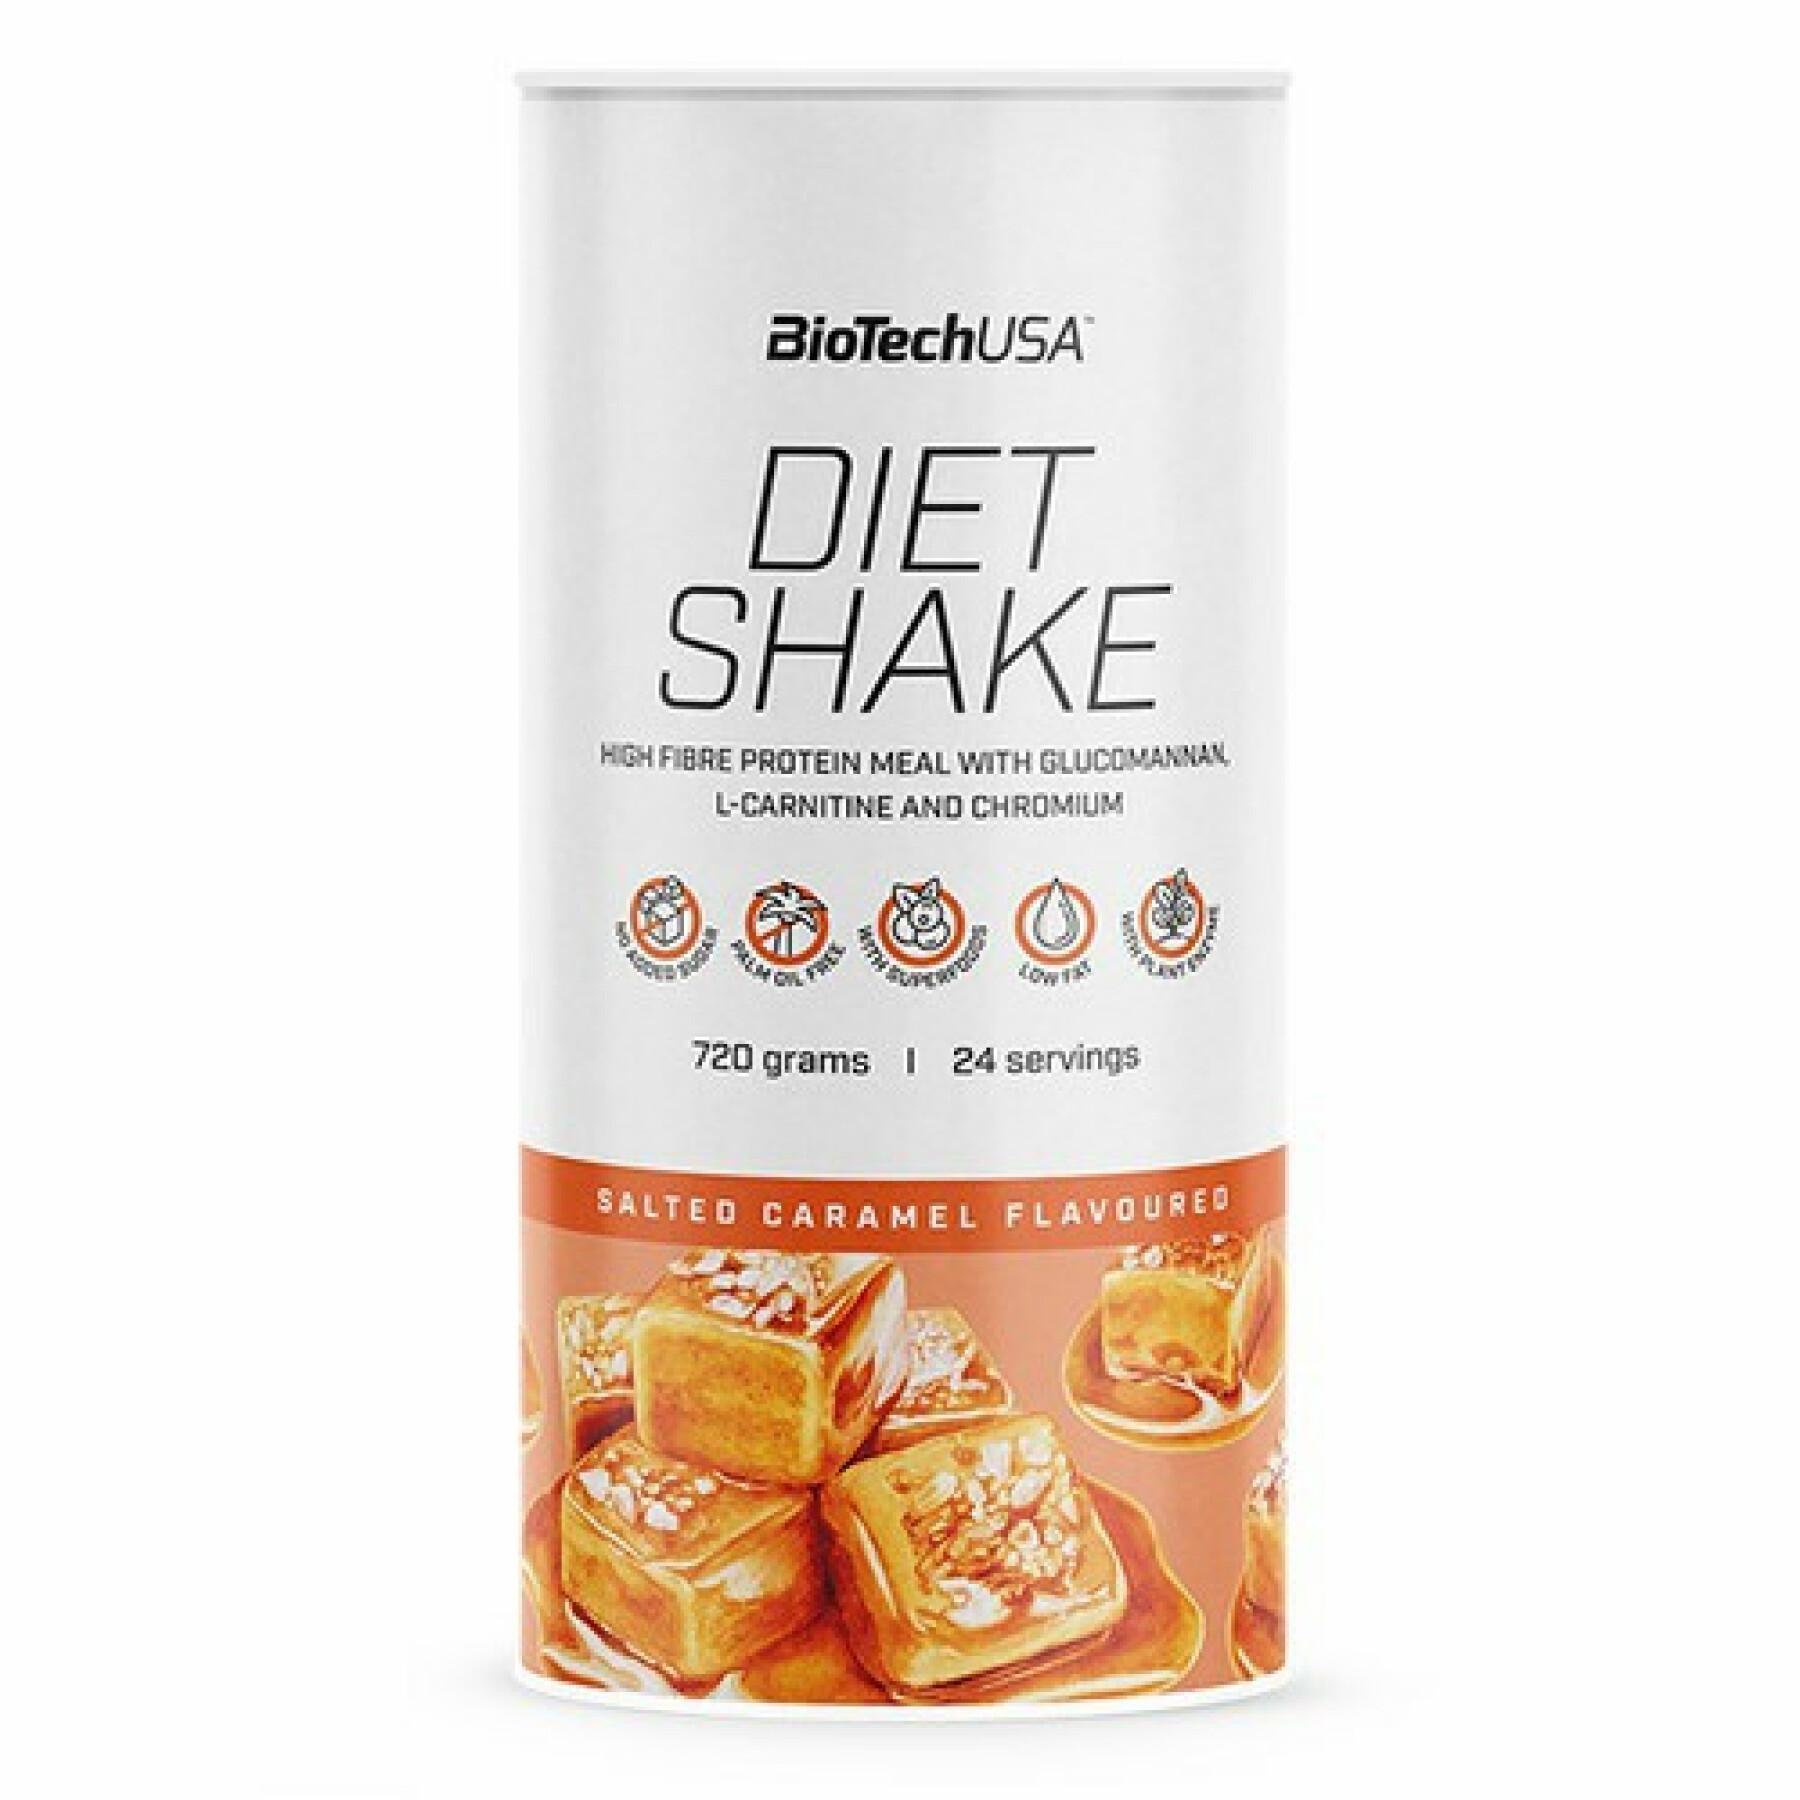 Paquete de 6 botes de proteínas Biotech USA diet shake - Caramel salé - 720g